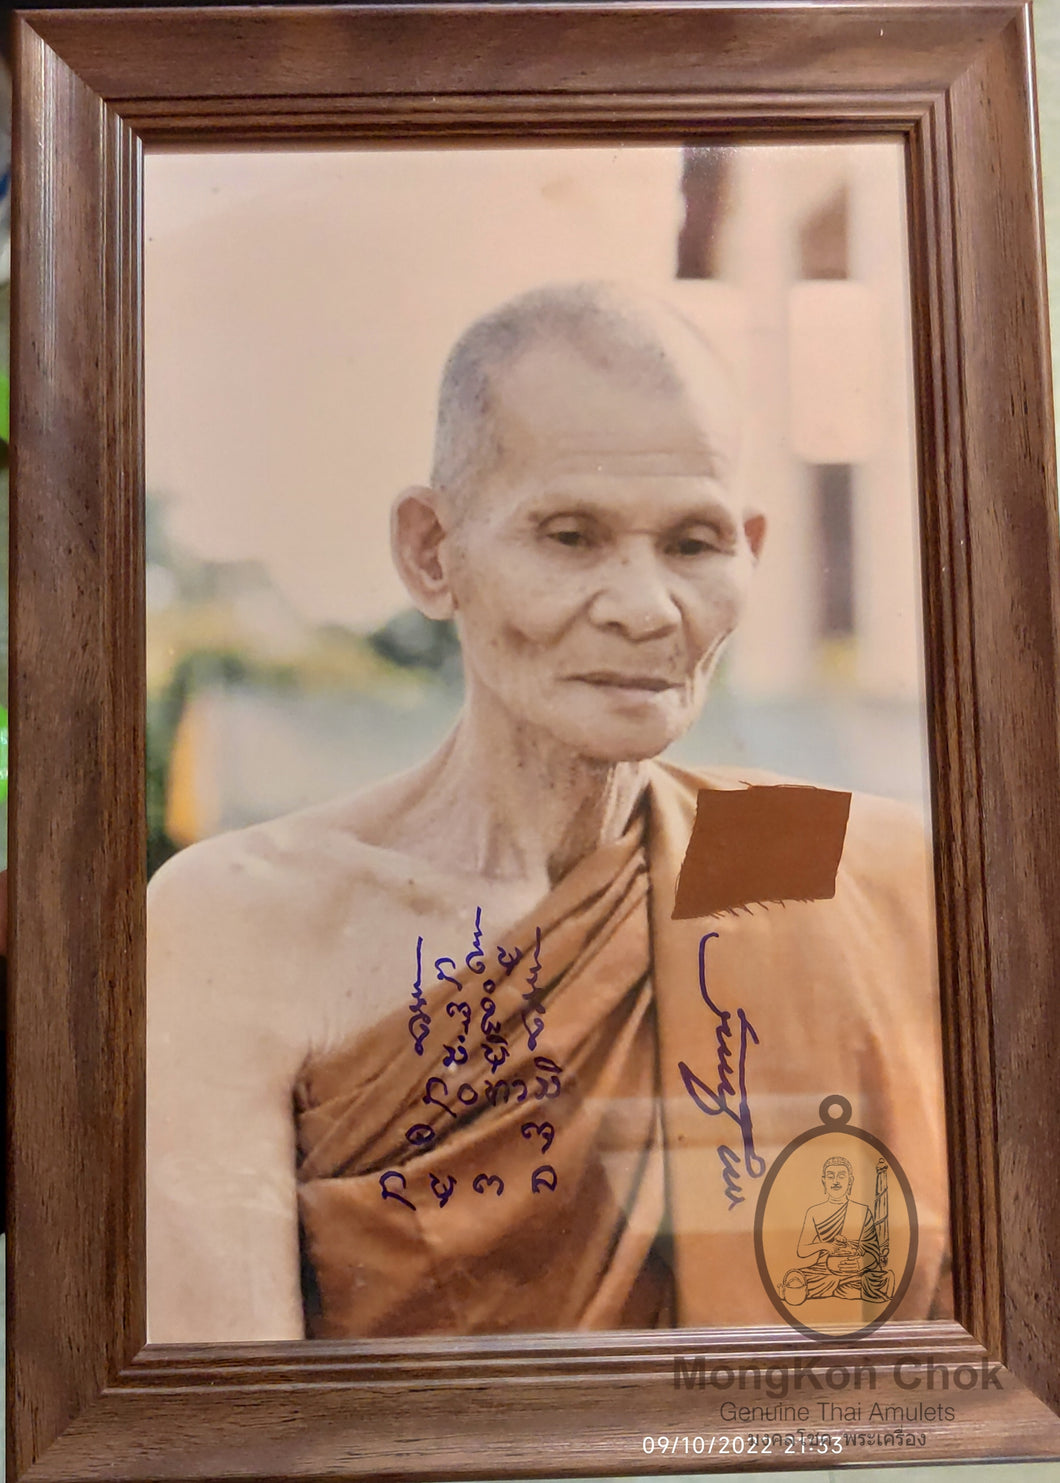 Bucha Rootai Luang Pu Khampan